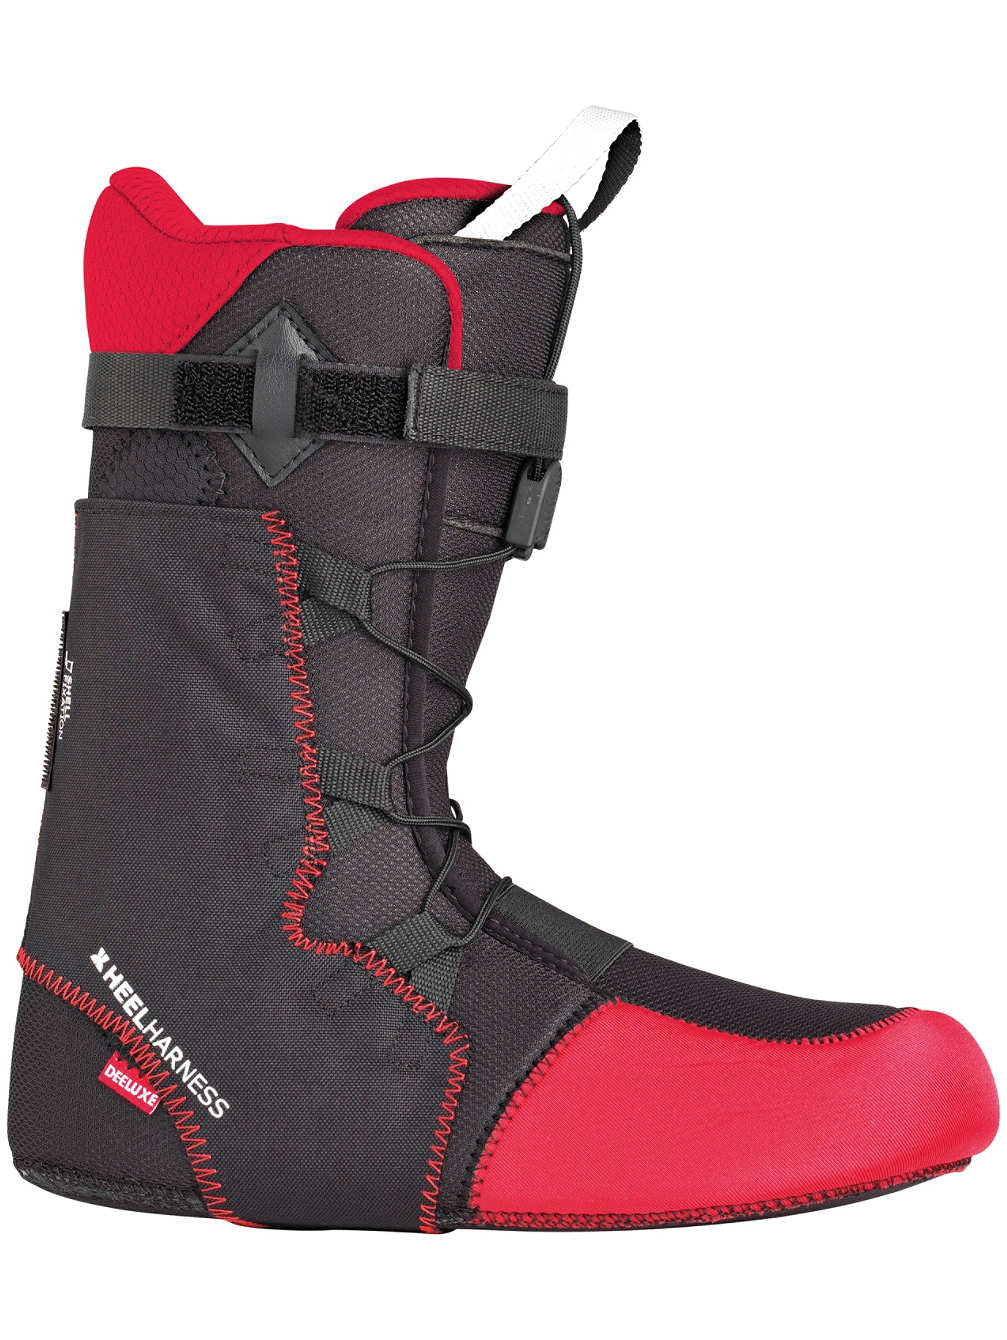 Wkładki do butów snowboardowych Thermo Flex Deeluxe Premium Liner, rozmiar 45,5/30cm